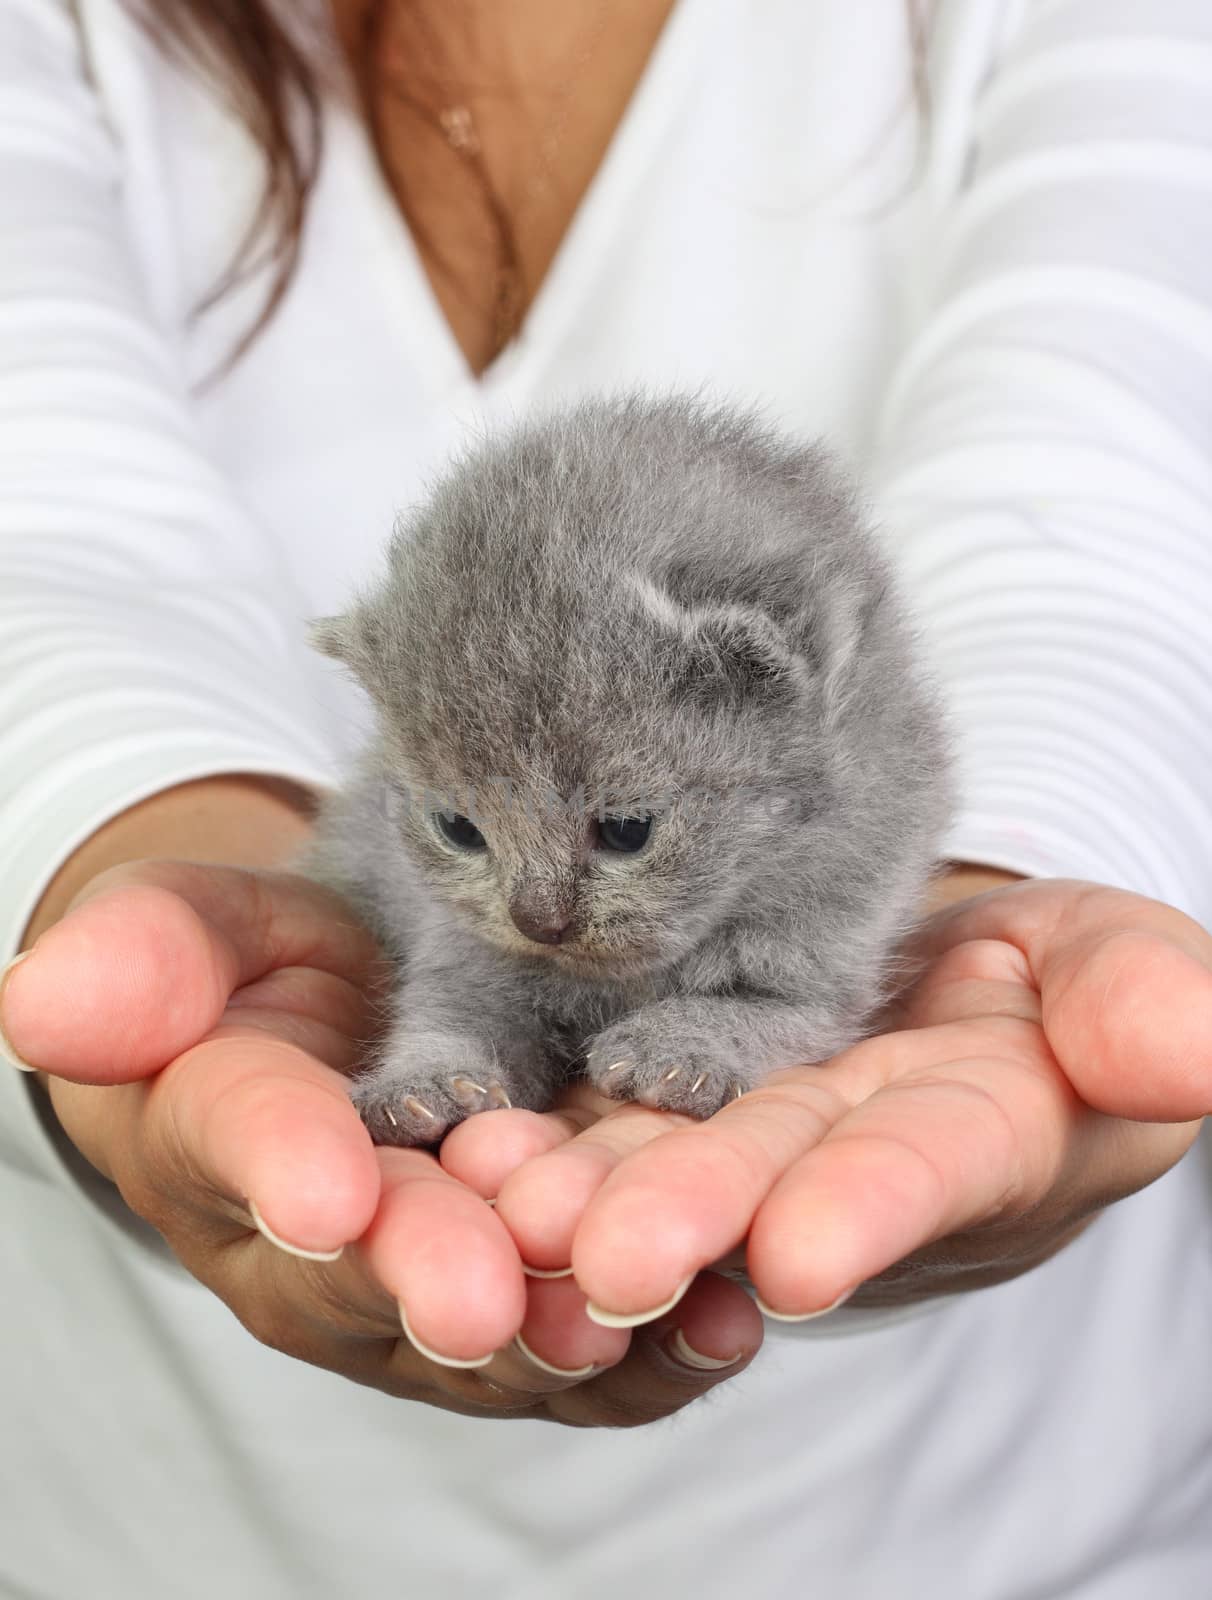 Little kitten in the hands by dedmorozz